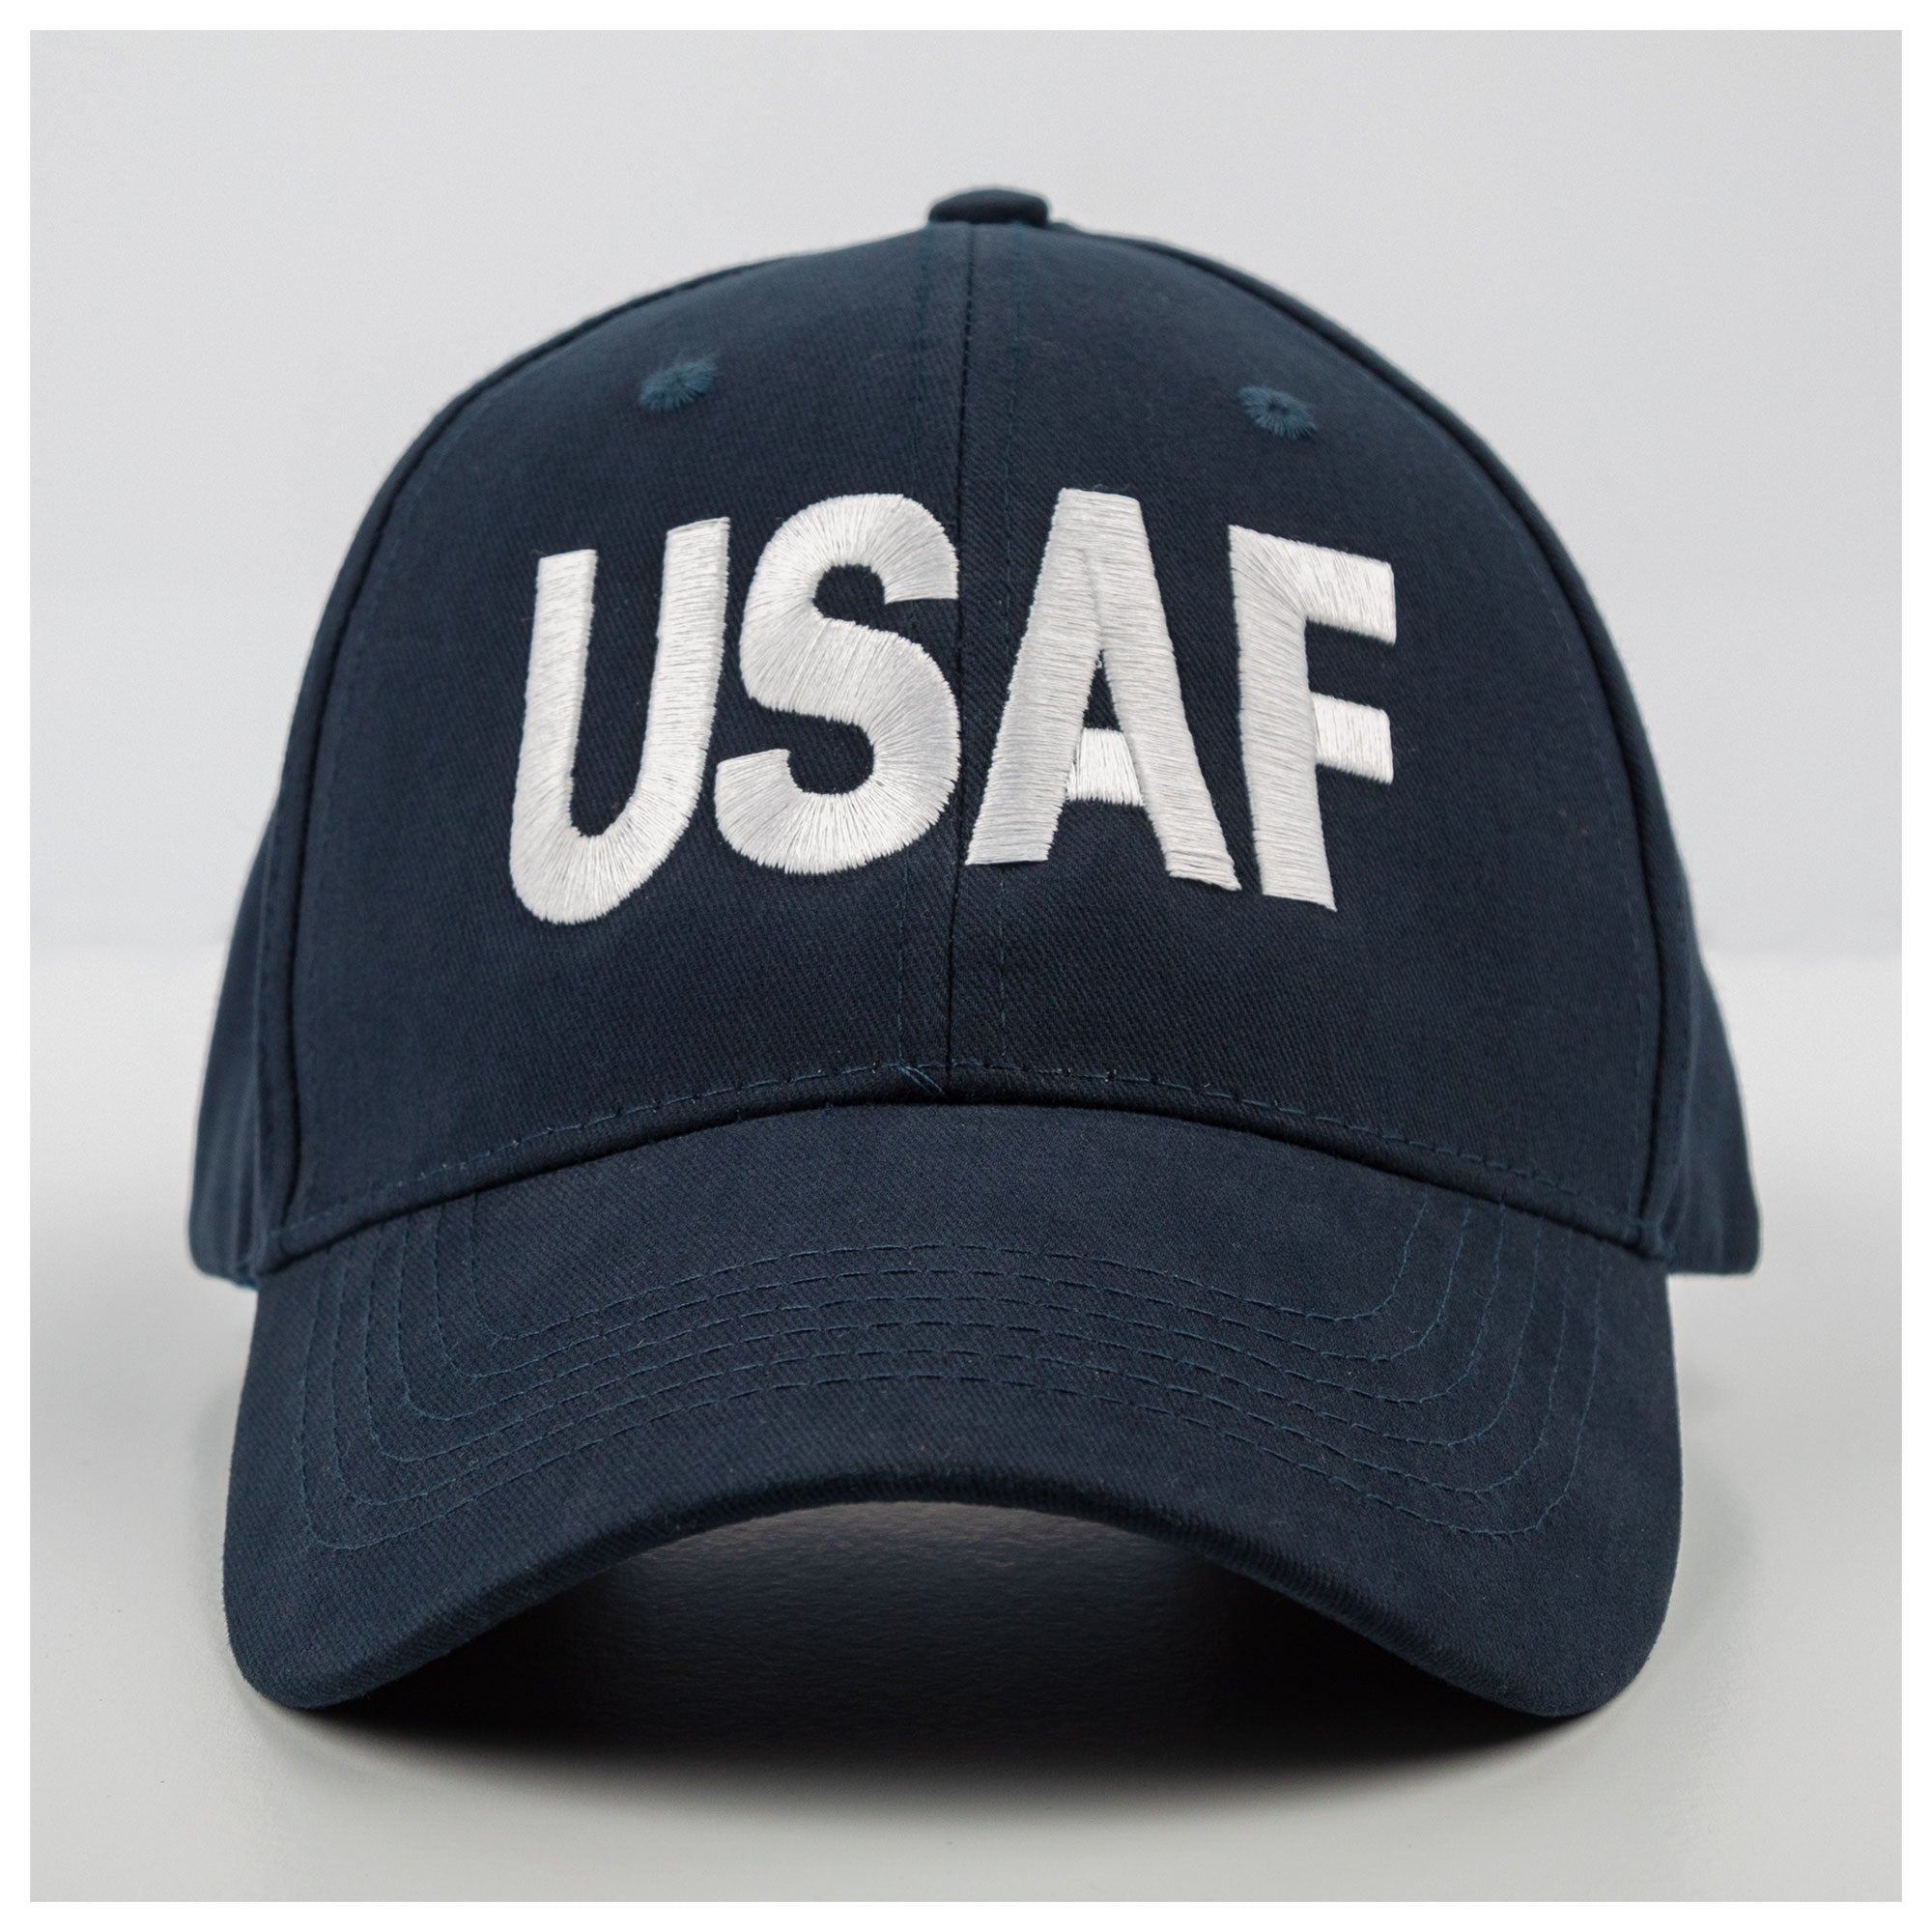 U.S. Military Pride Cap - U.S.A.F. Letters